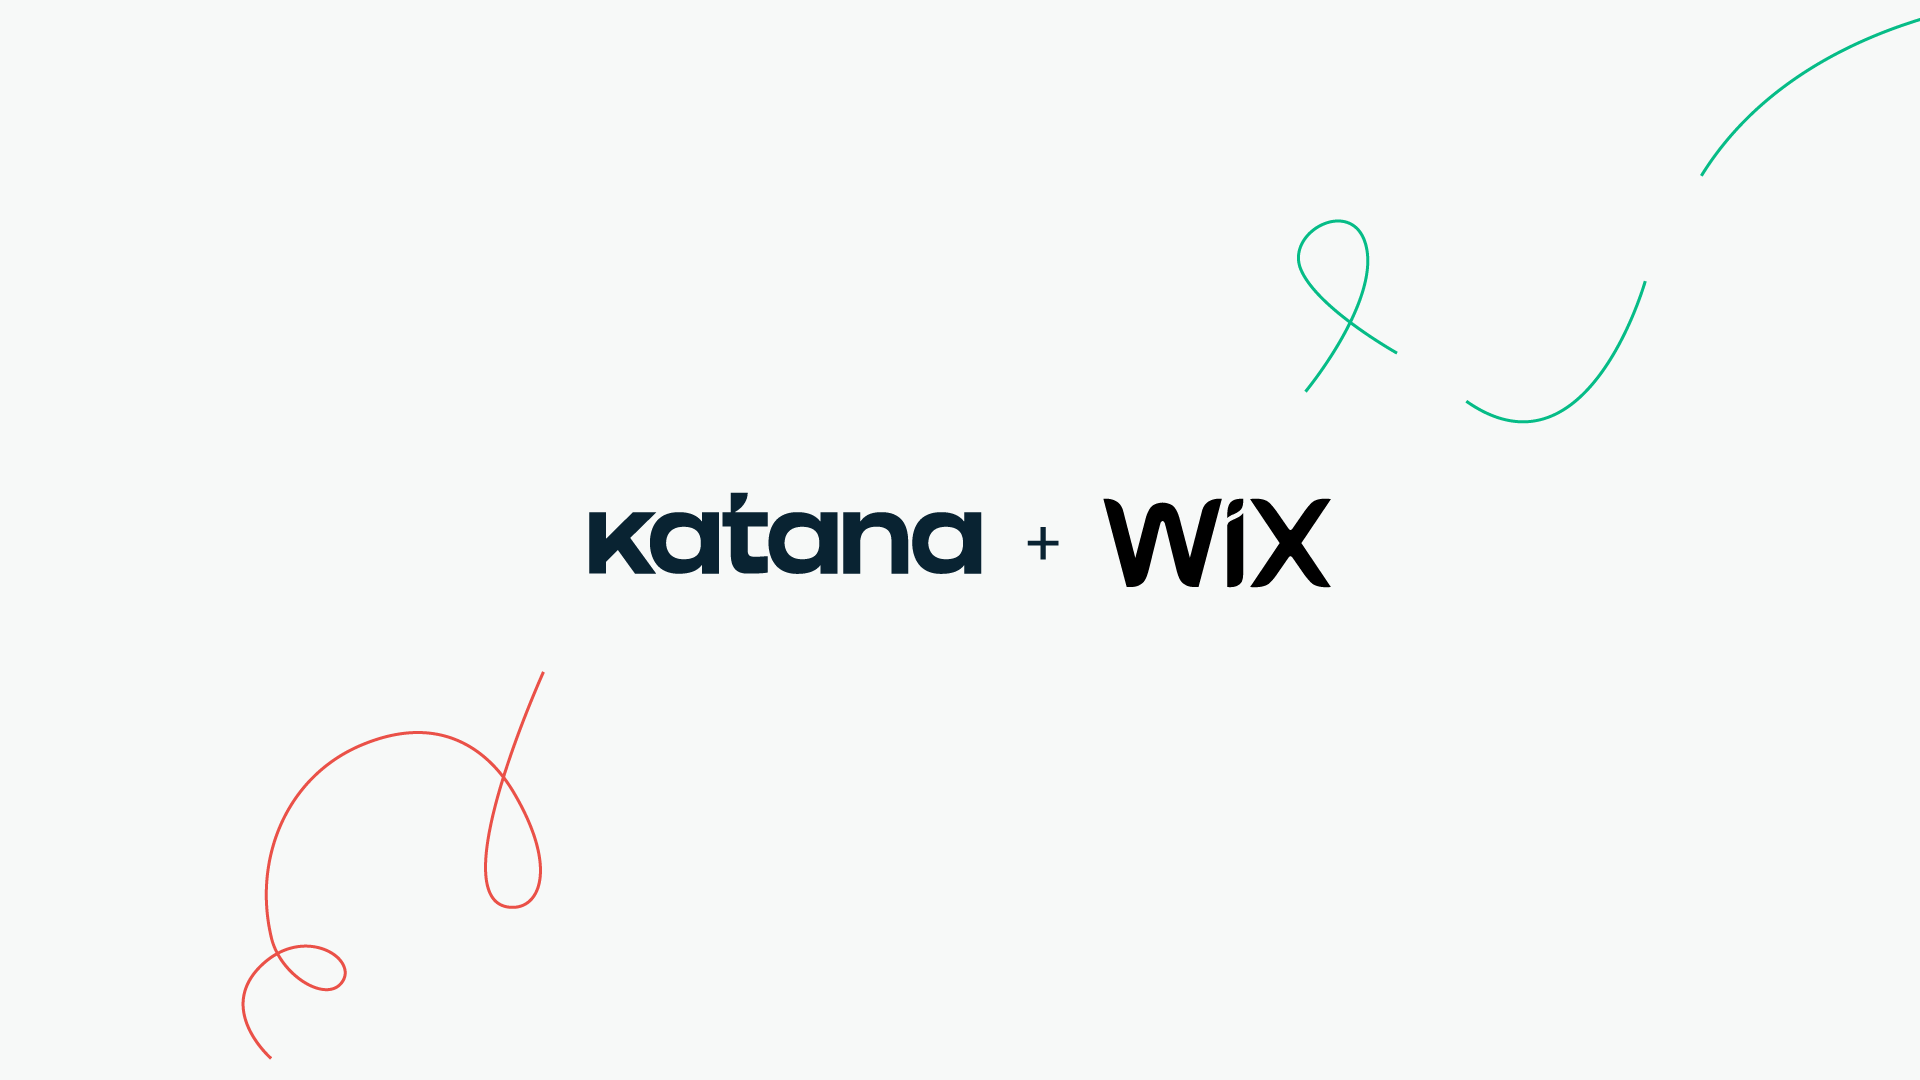 Katana + Wix integration